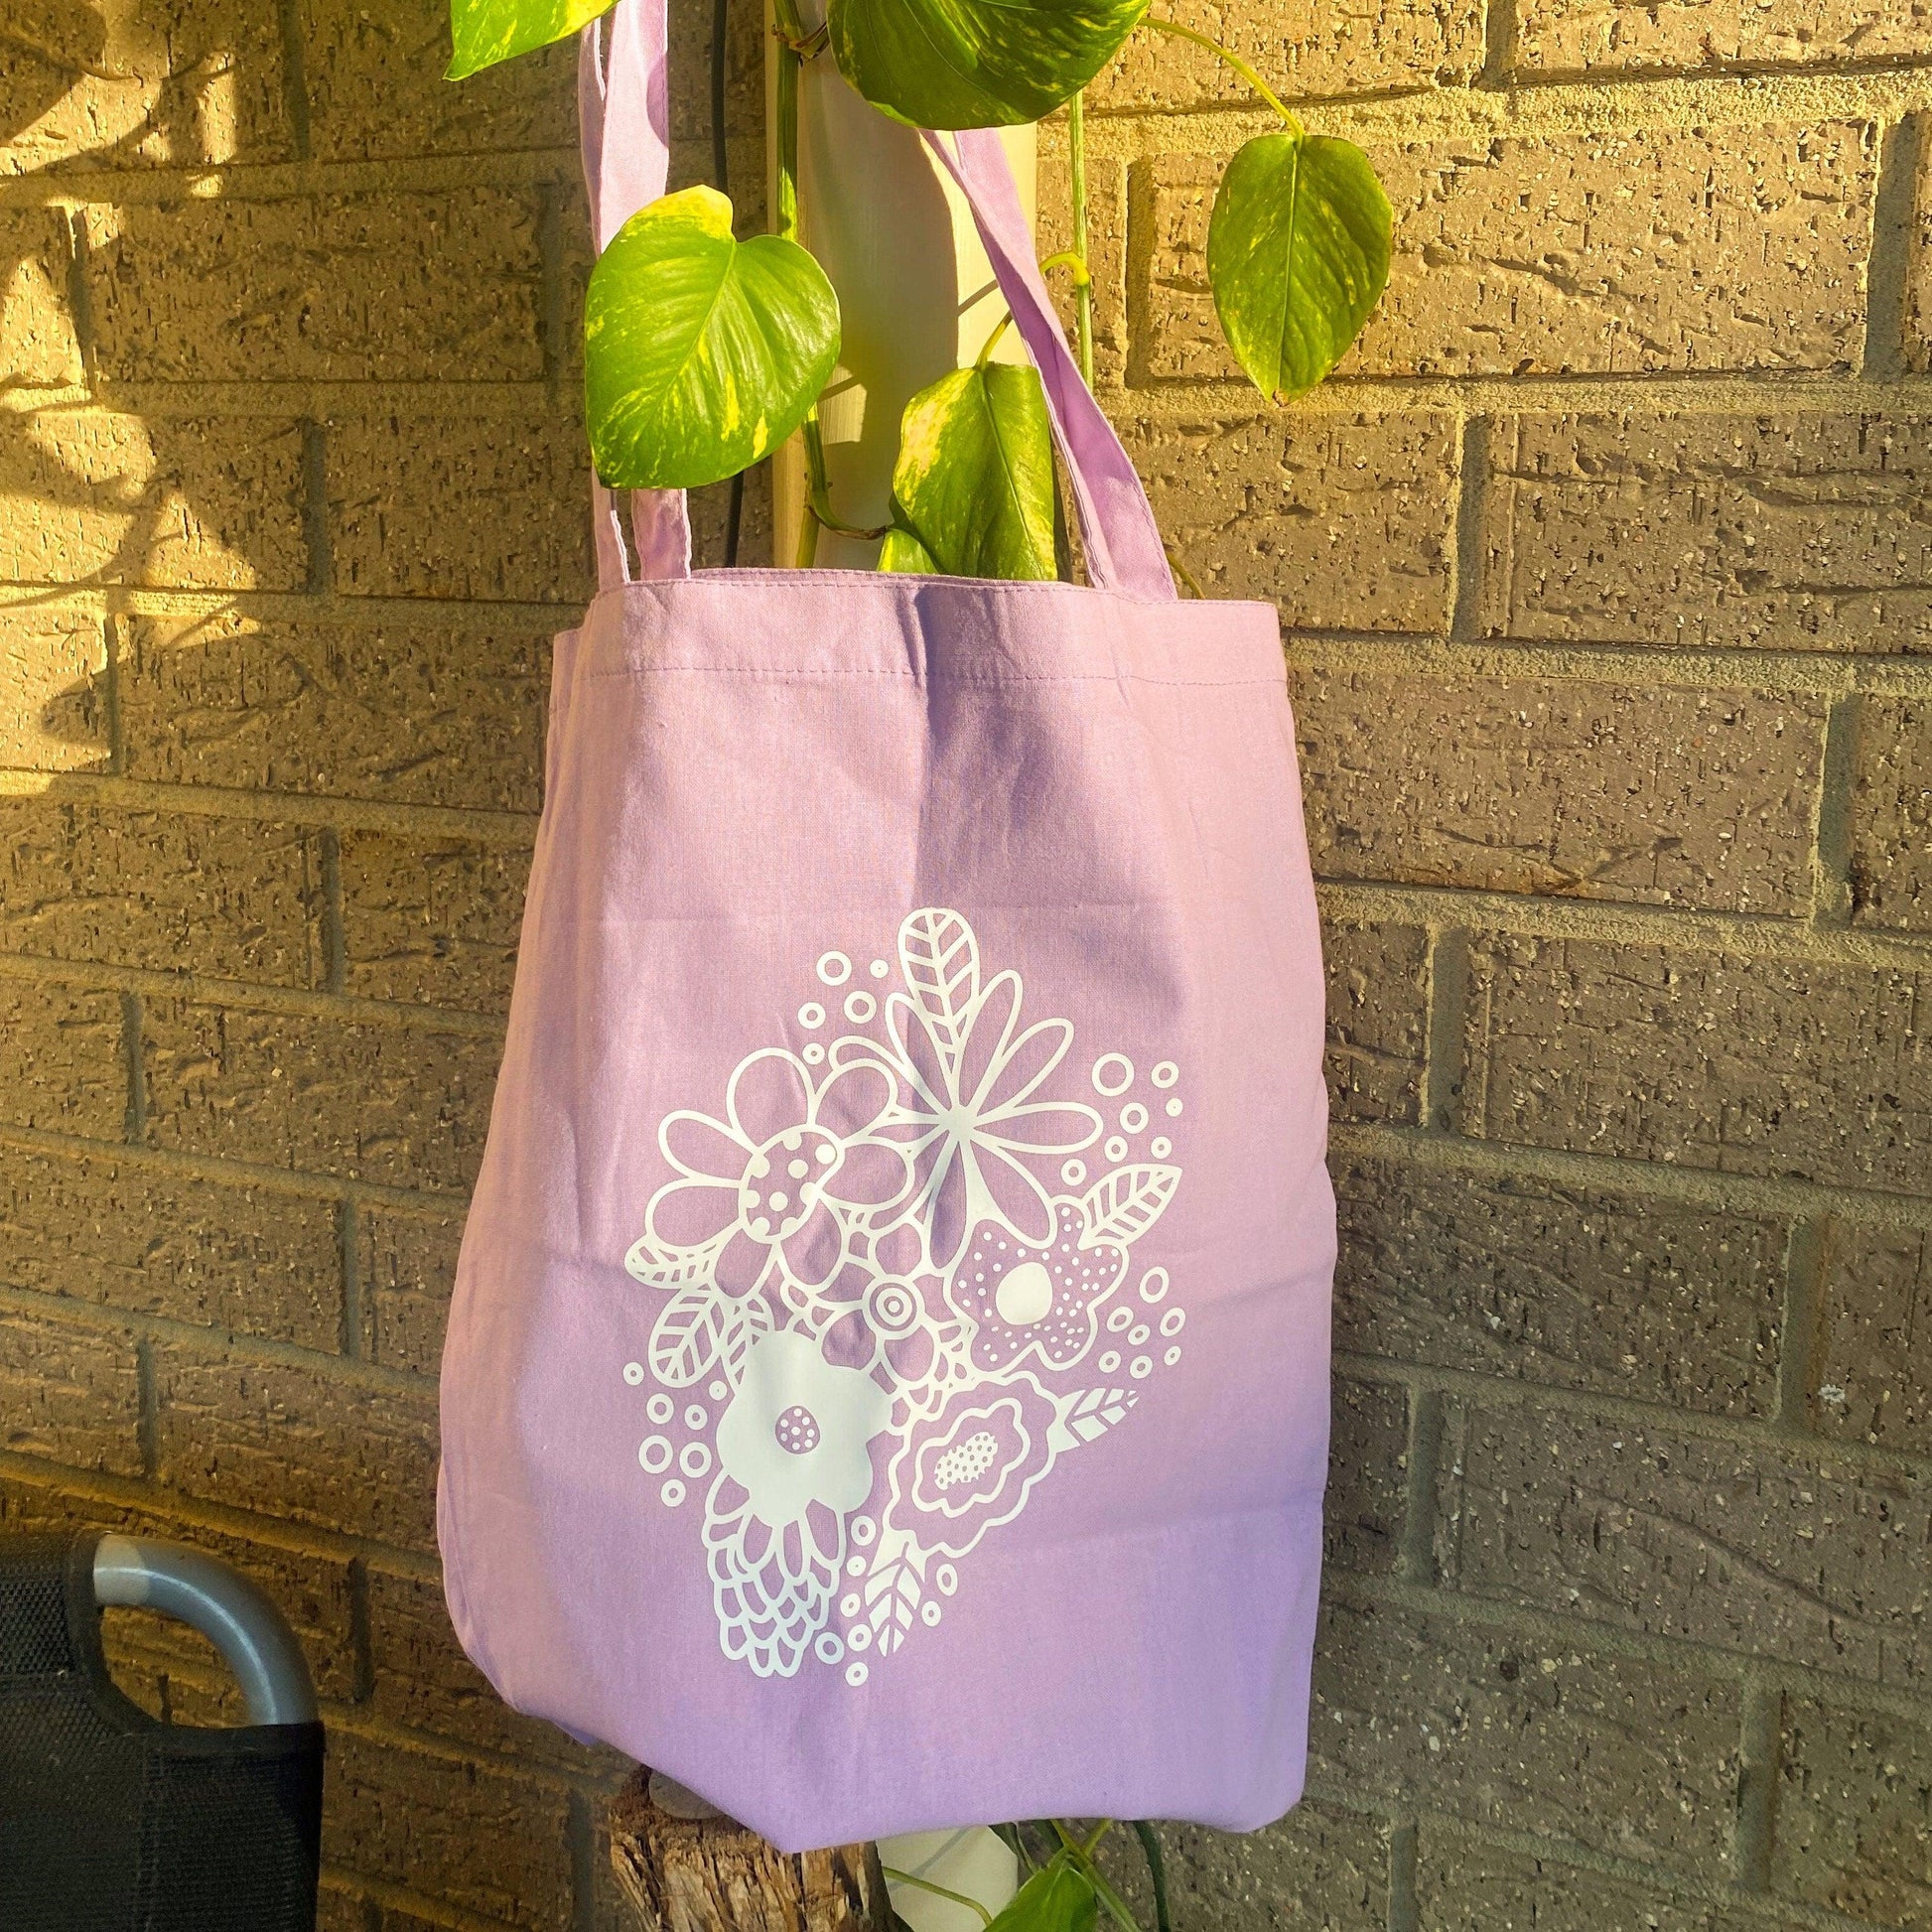 Purple Flower Tote Bag